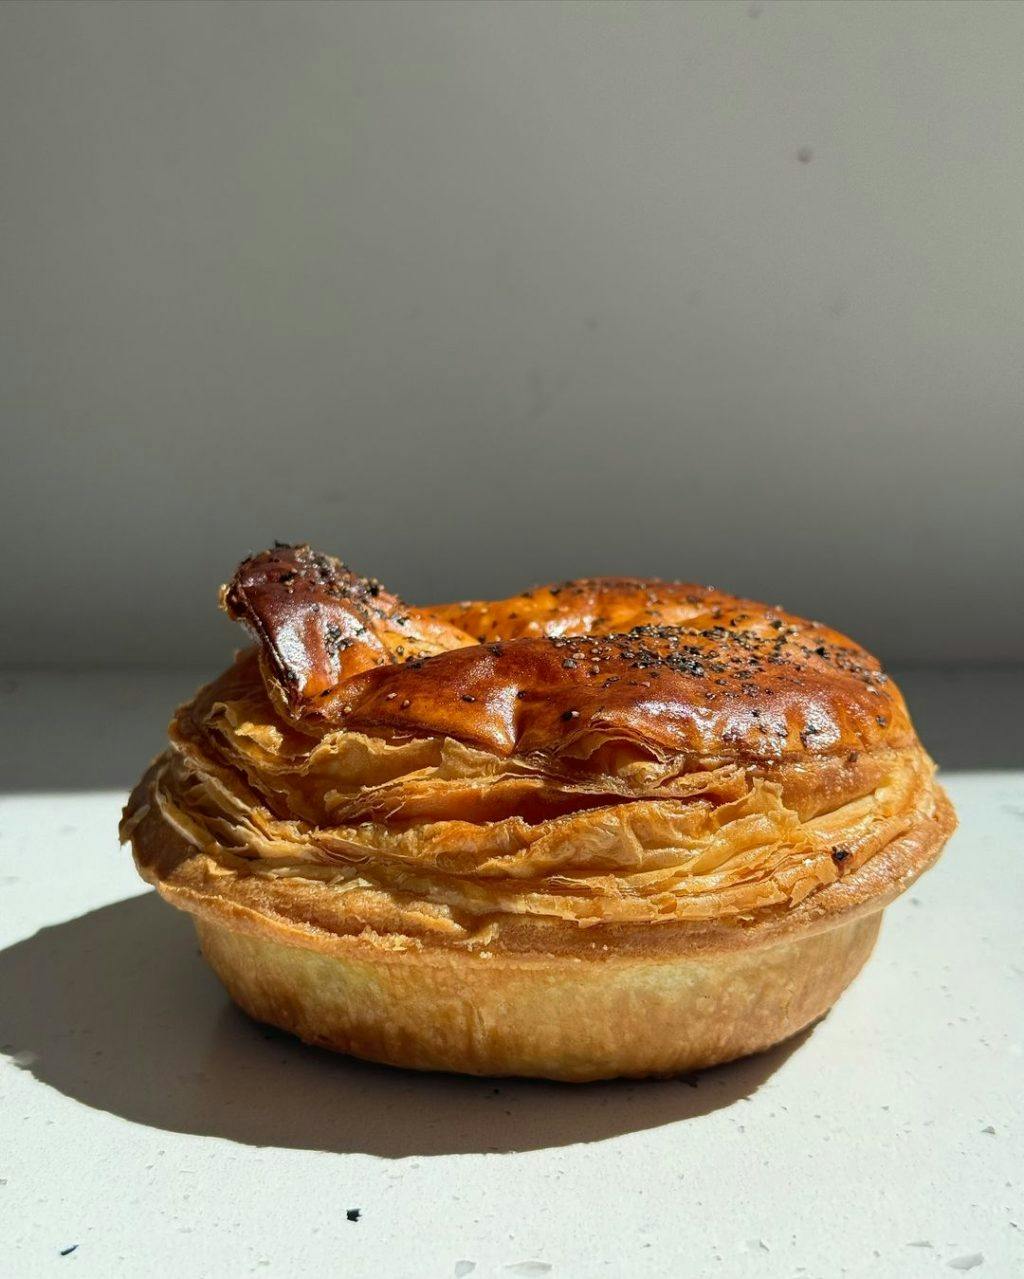 Perth's best pies, Goods Bakery West Leederville